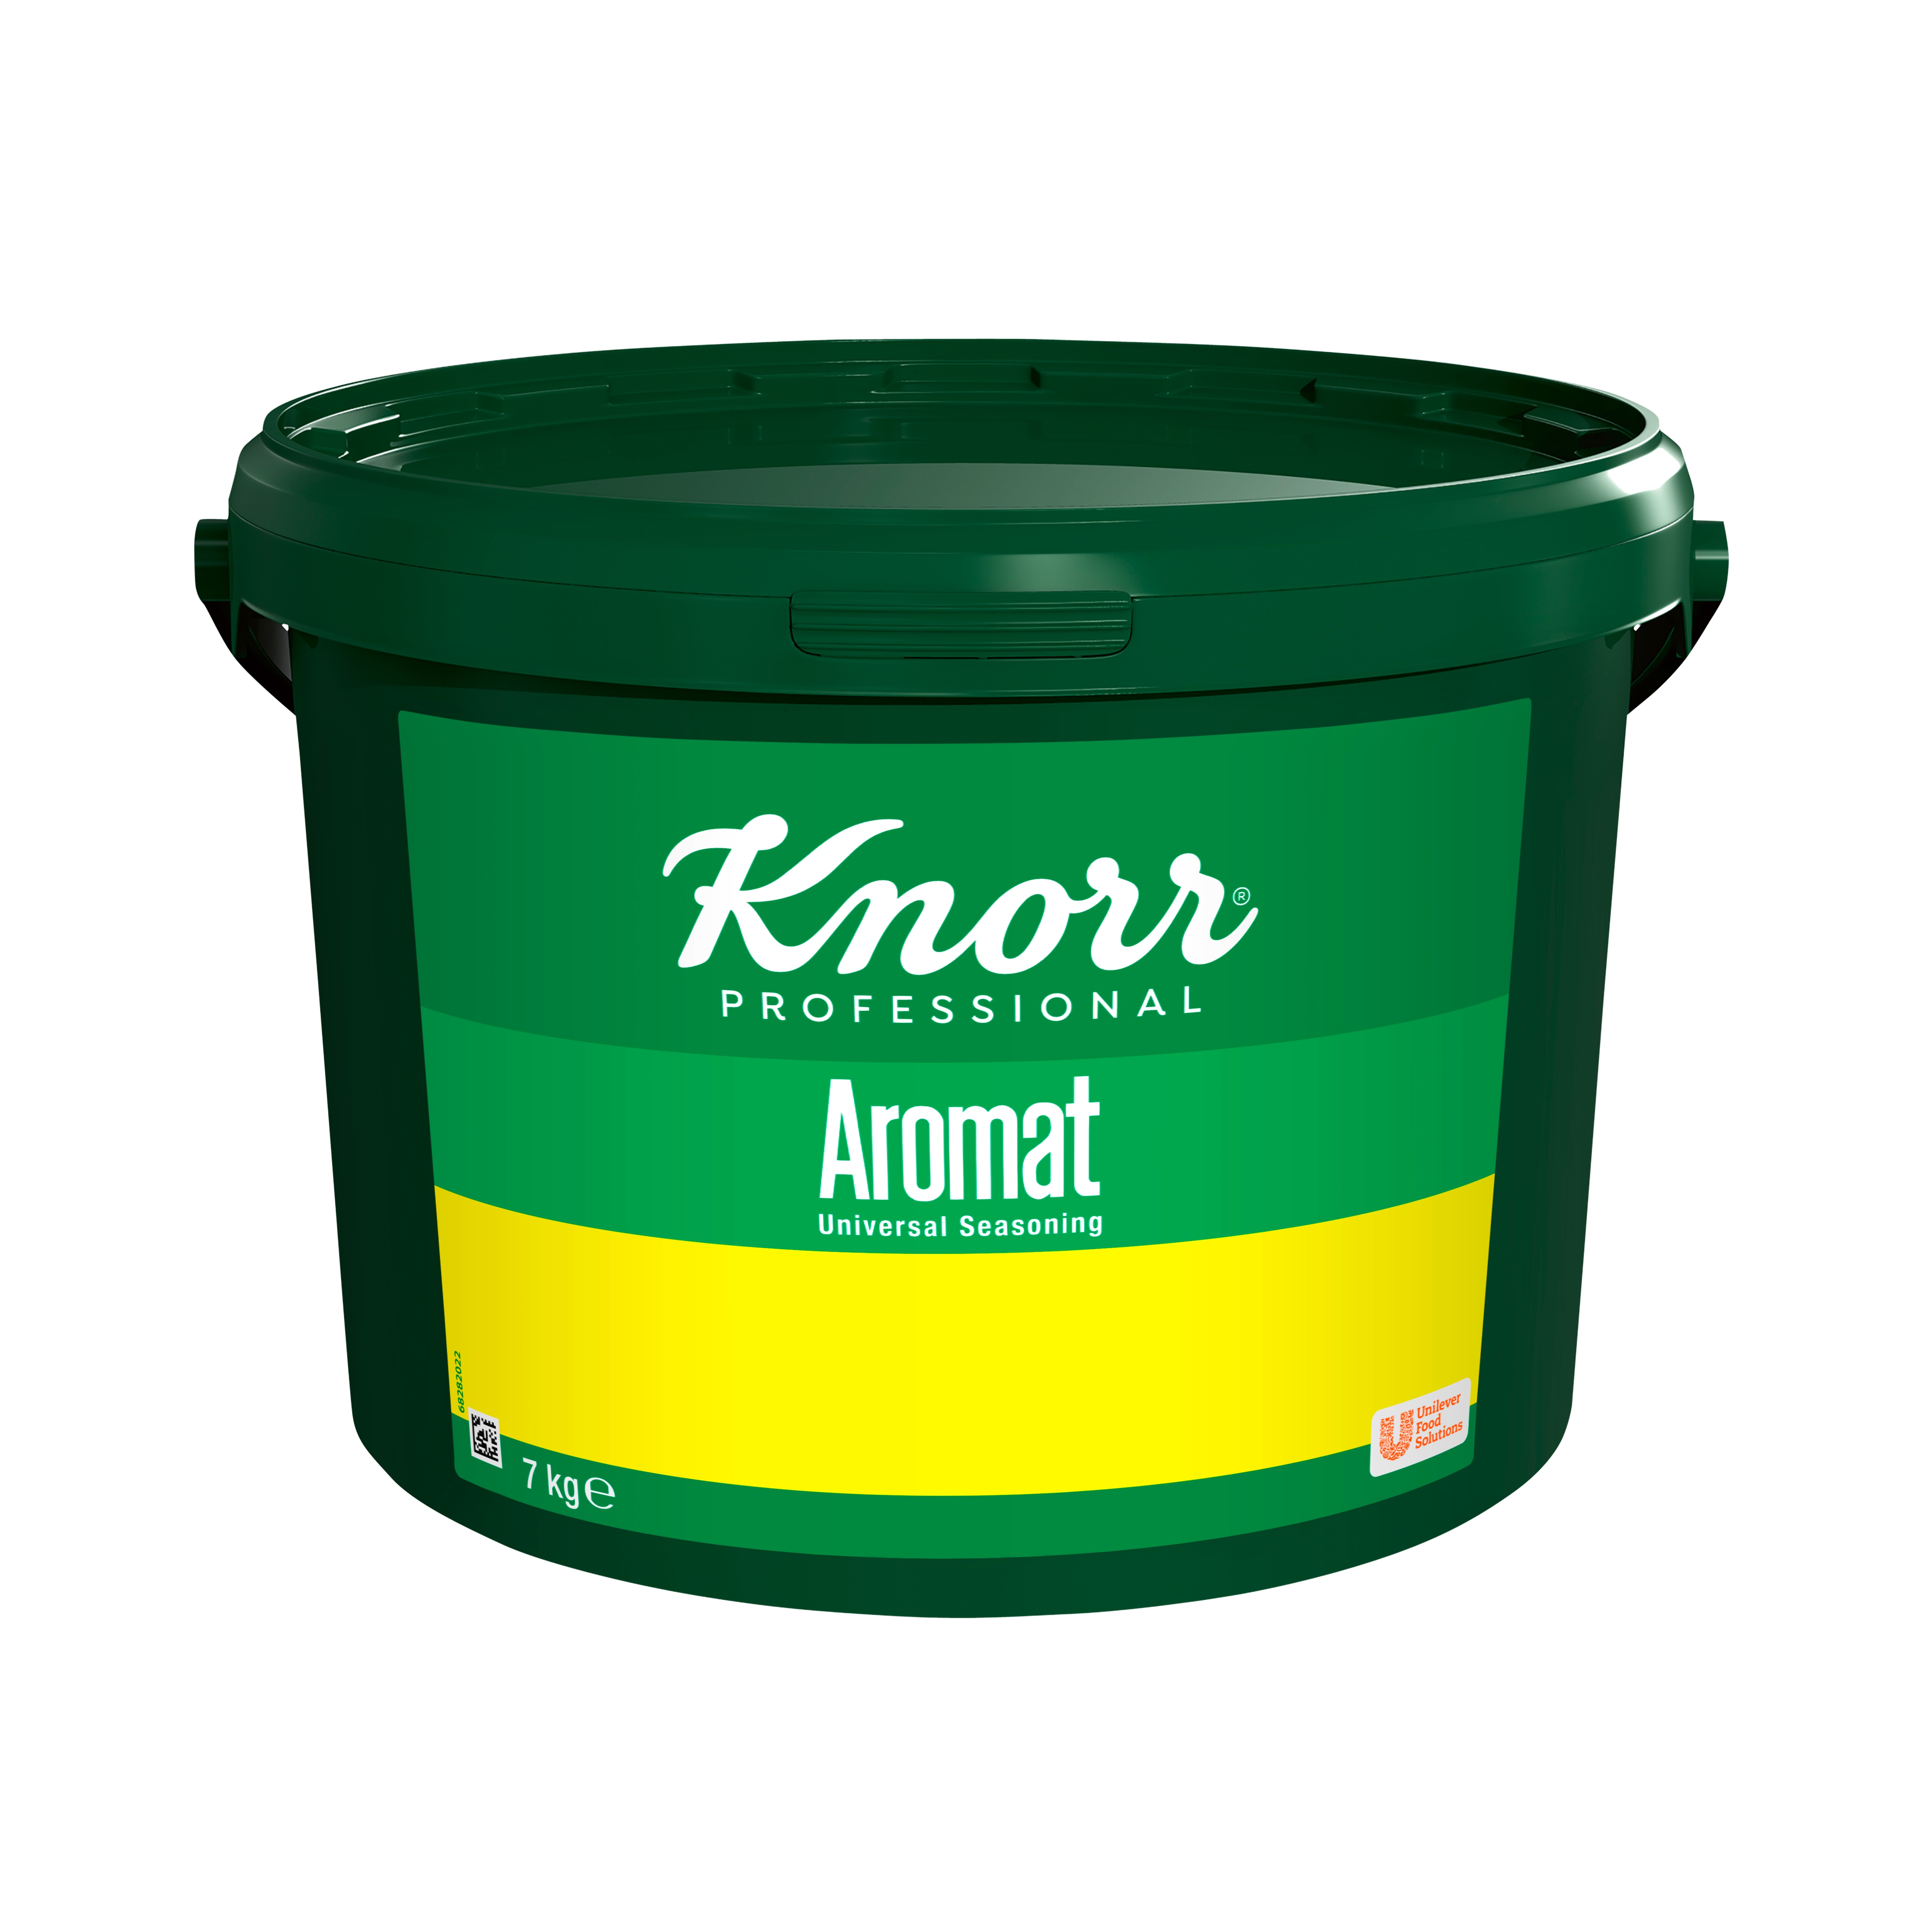 Knorr Aromat, ekonomiförpackning 1 x 7 kg